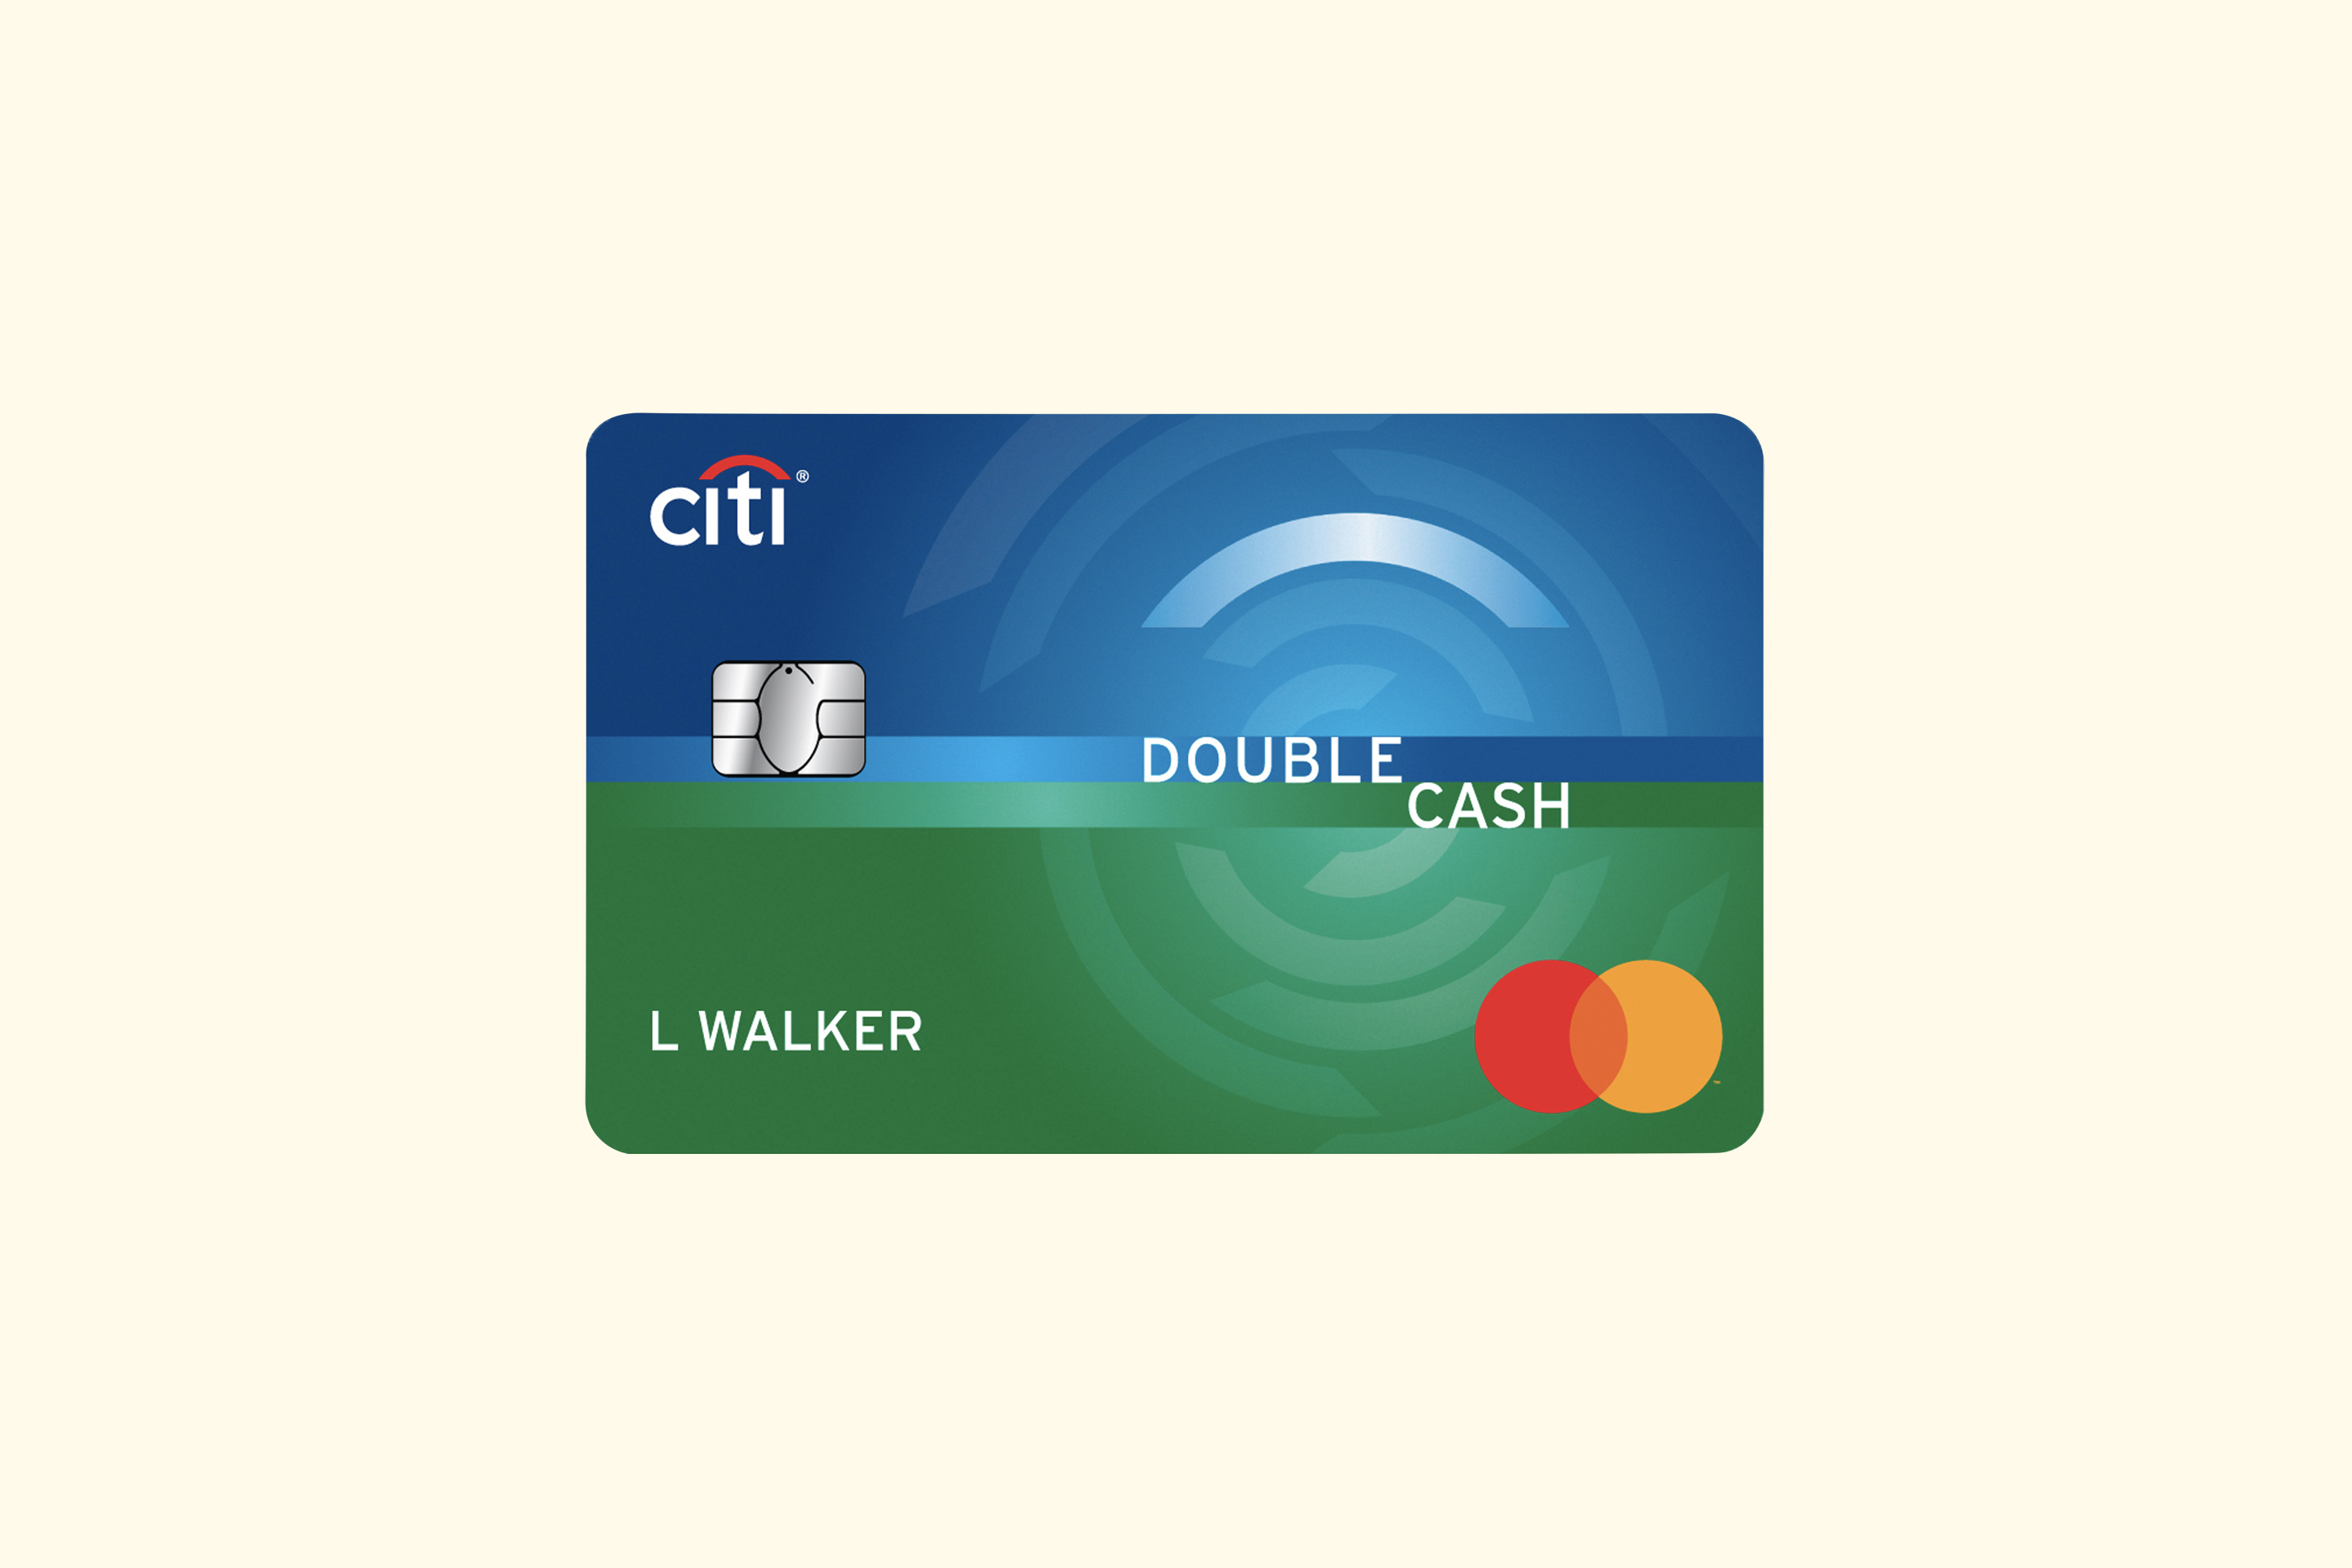 Citi Double Dash Credit Card